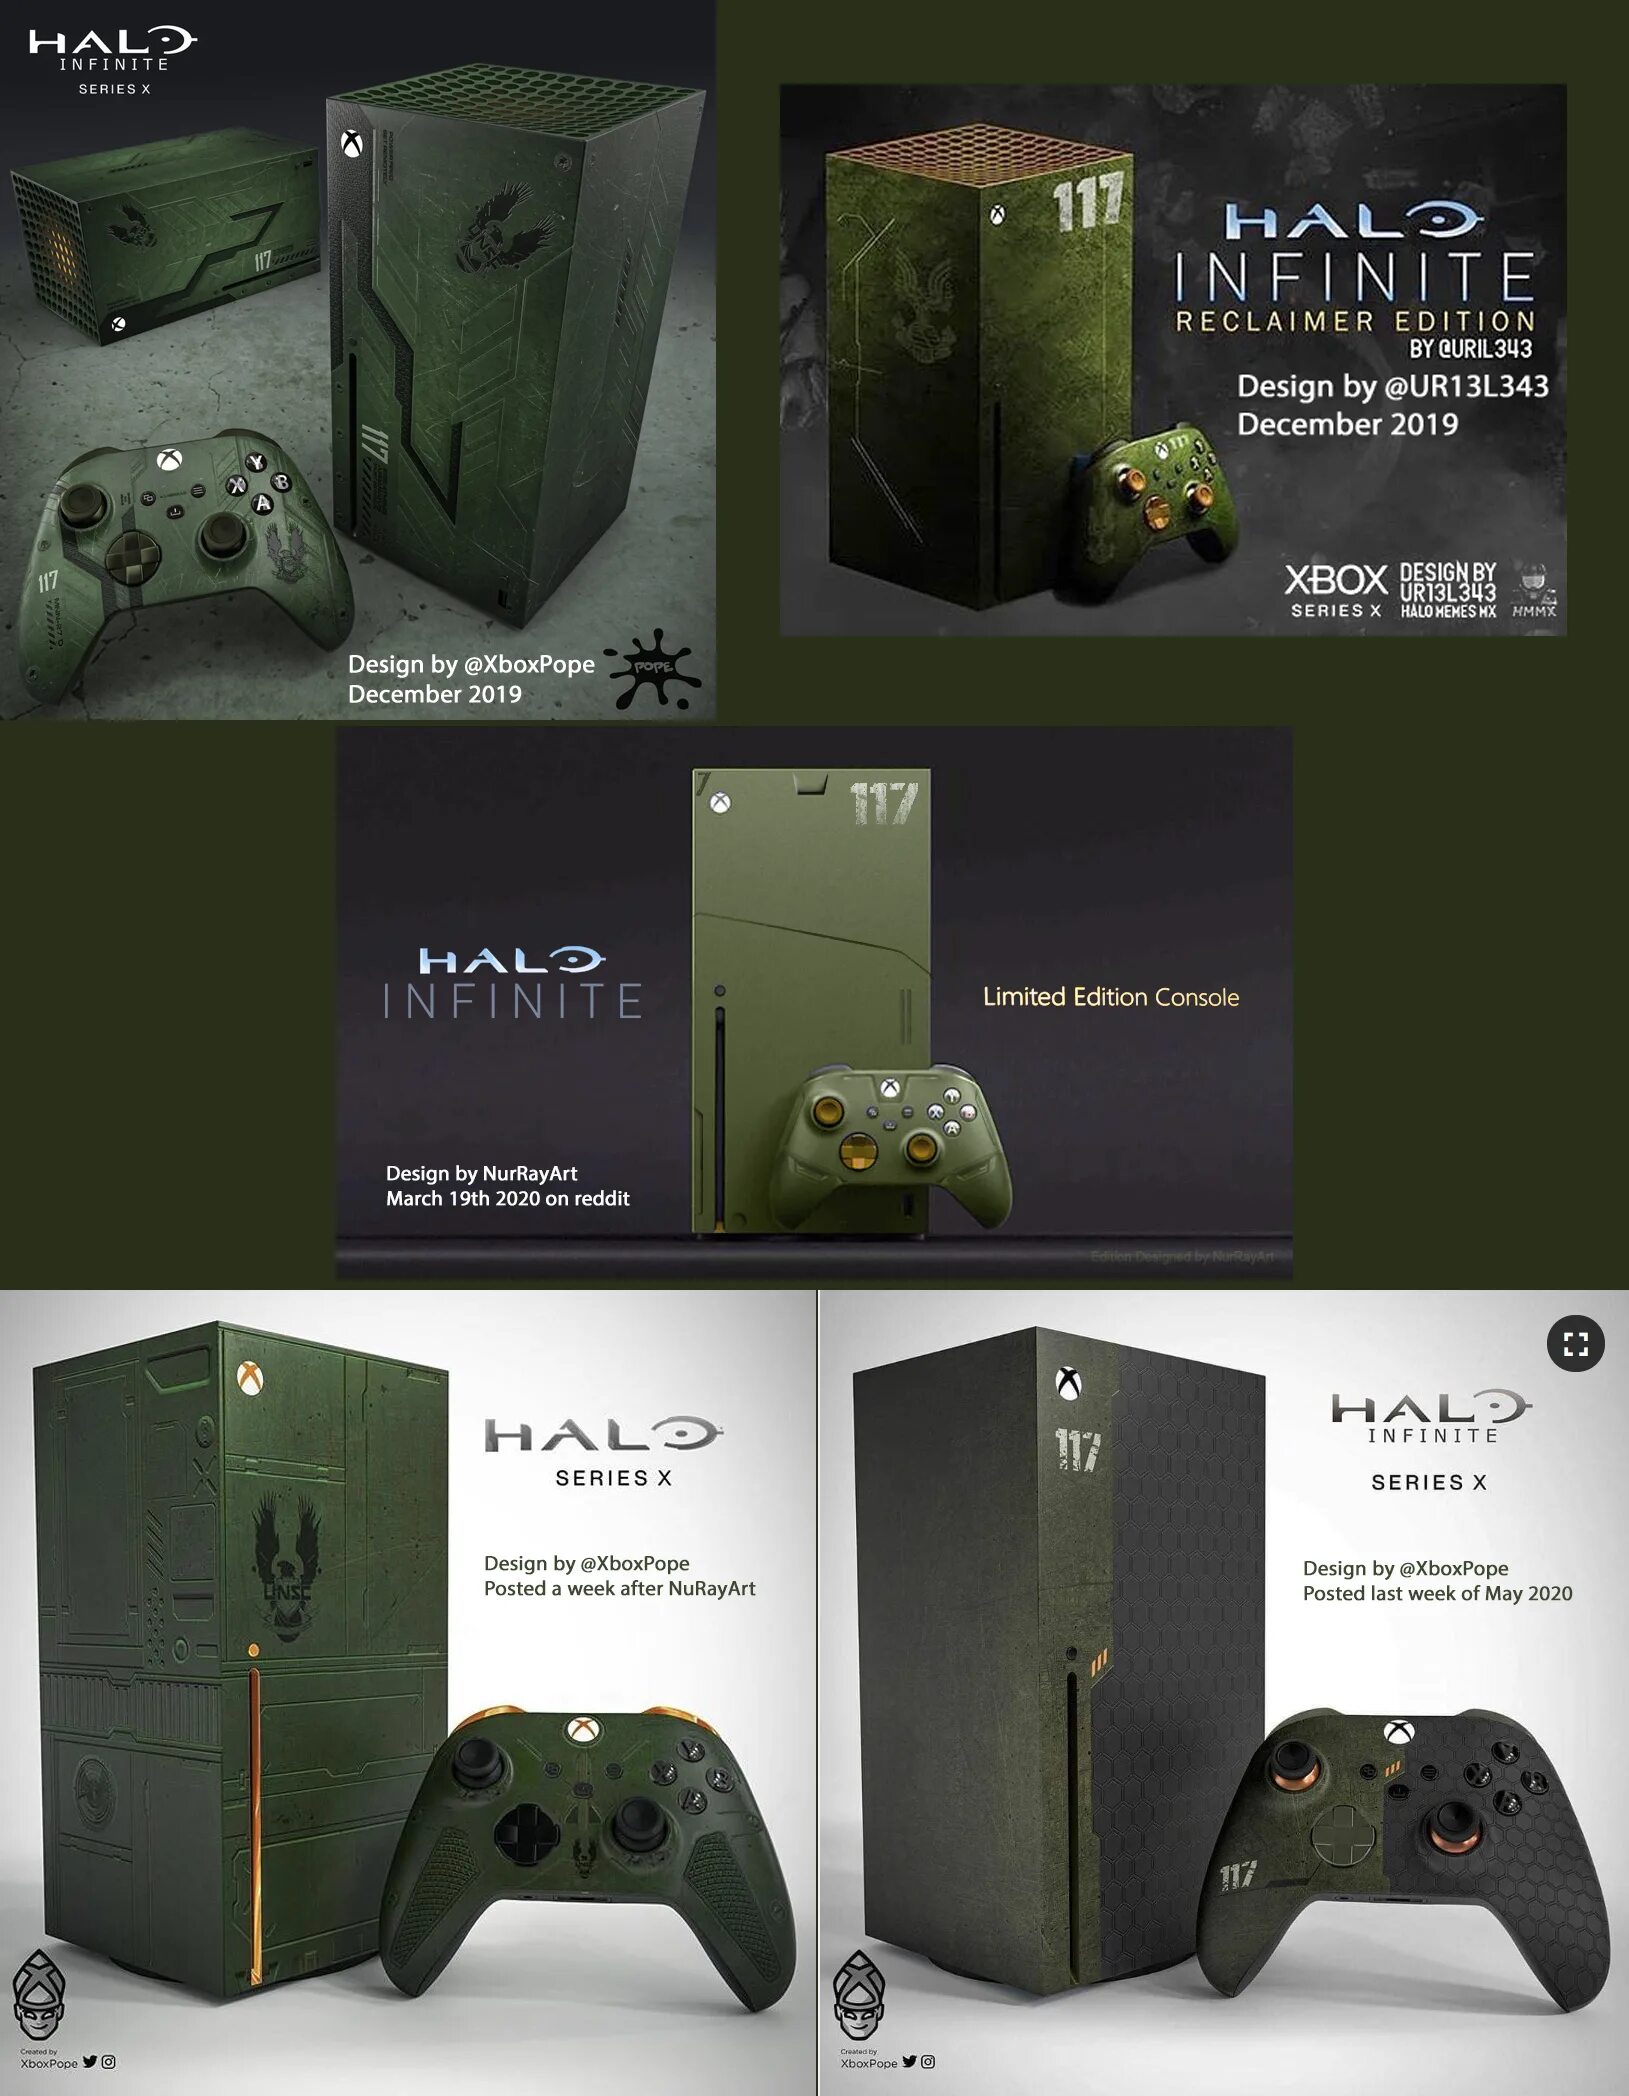 Series x halo. Xbox Series x Halo. Xbox Series x Limited Edition Halo. Xbox Series x Halo Infinite Edition. Xbox Limited Edition Halo Infinite Series.